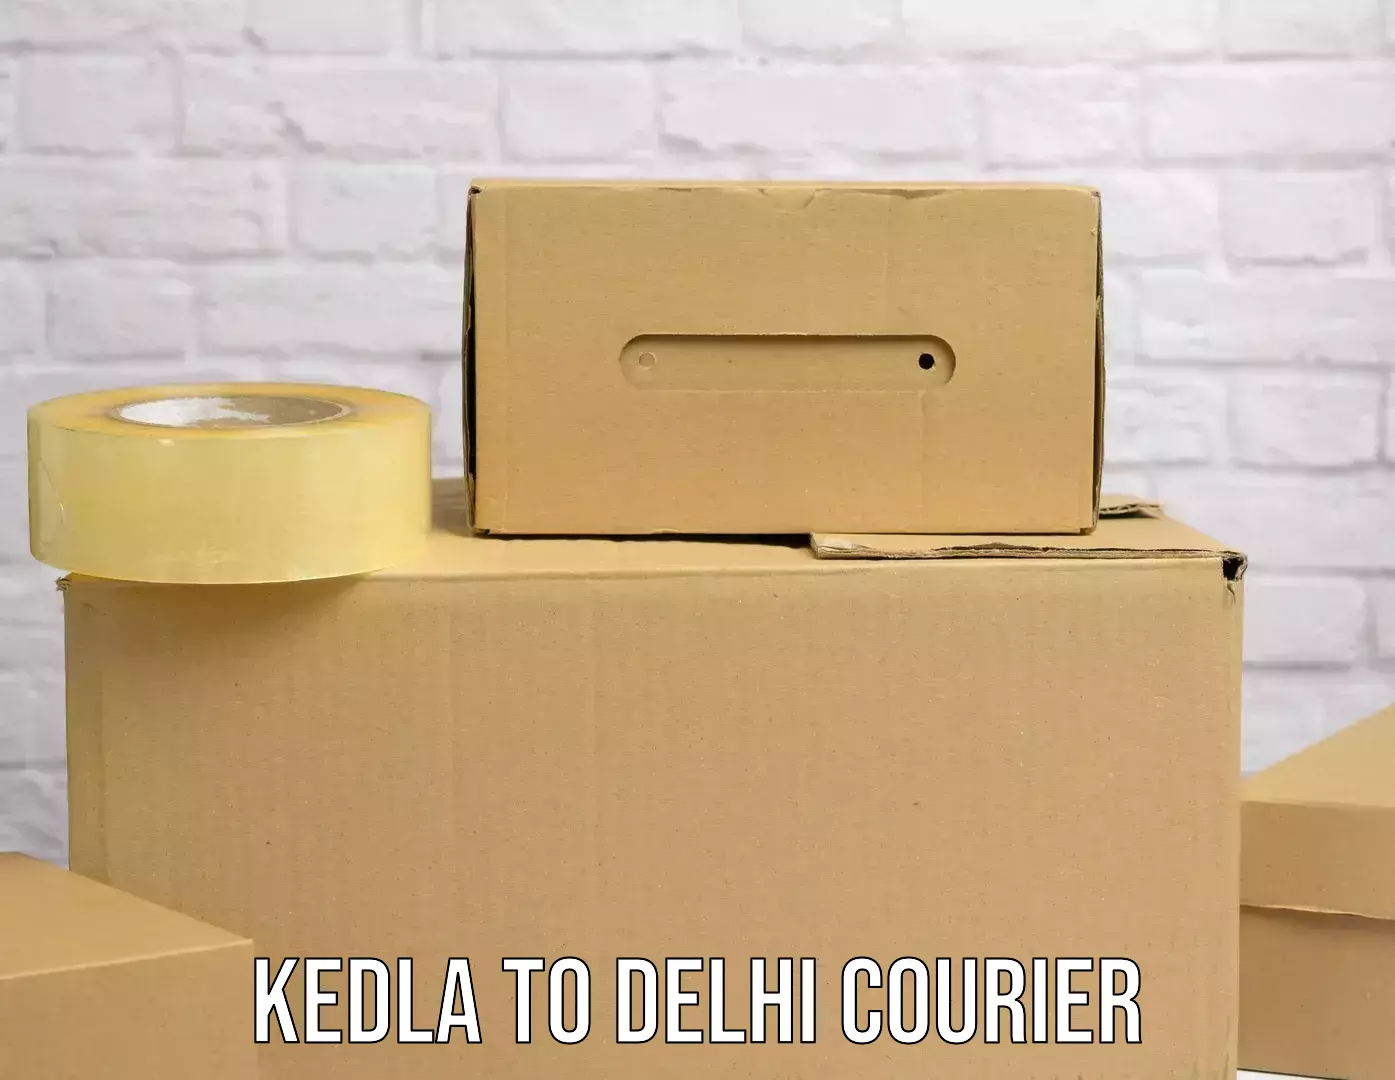 Postal and courier services Kedla to Jamia Millia Islamia New Delhi